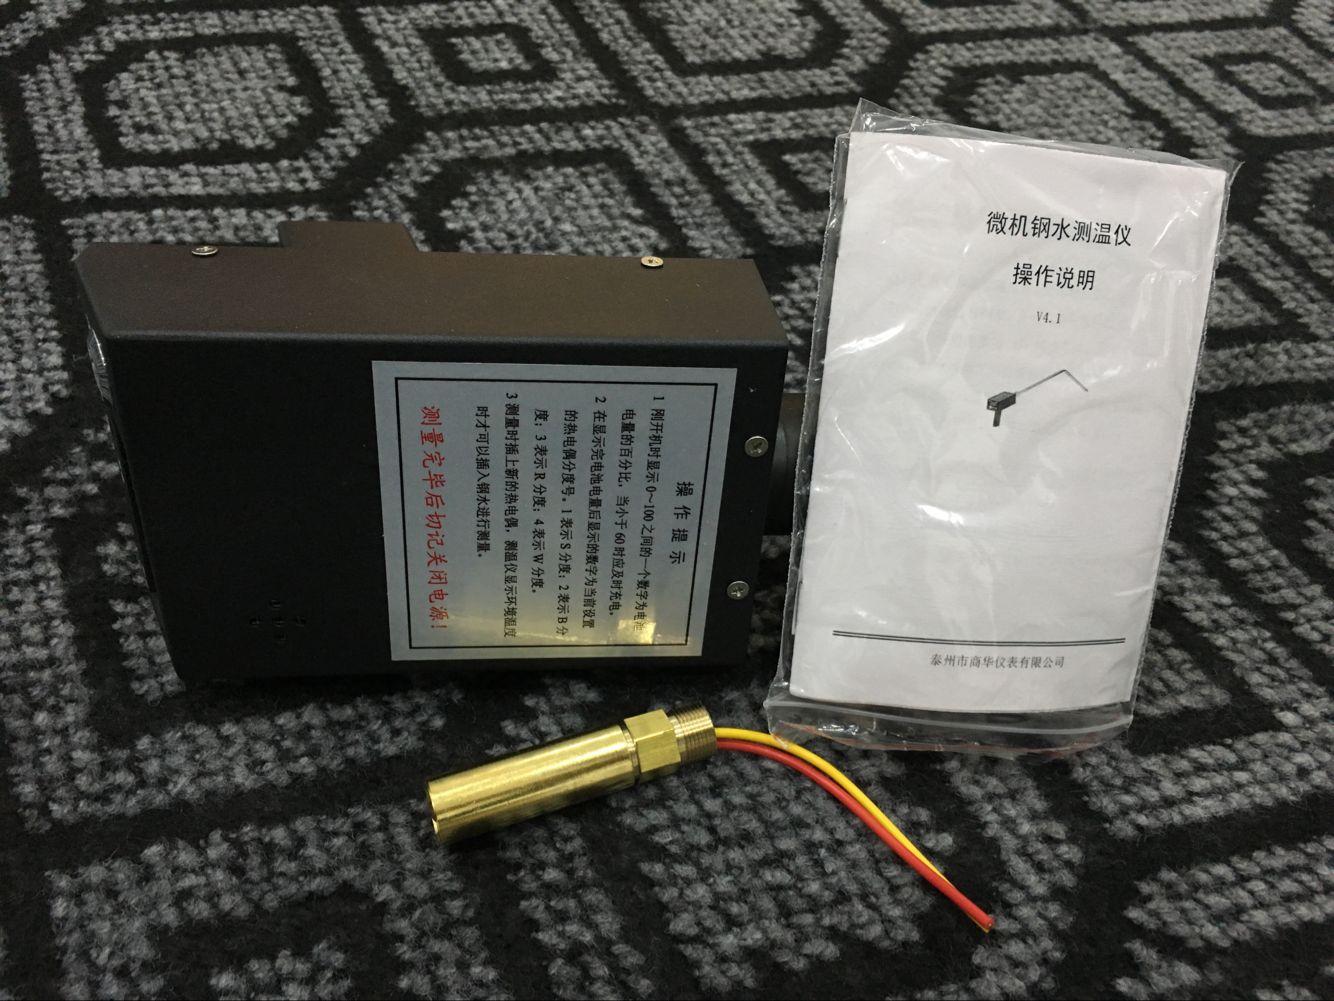 商华 W330 手持式钢水测温仪小型中频炉测温仪